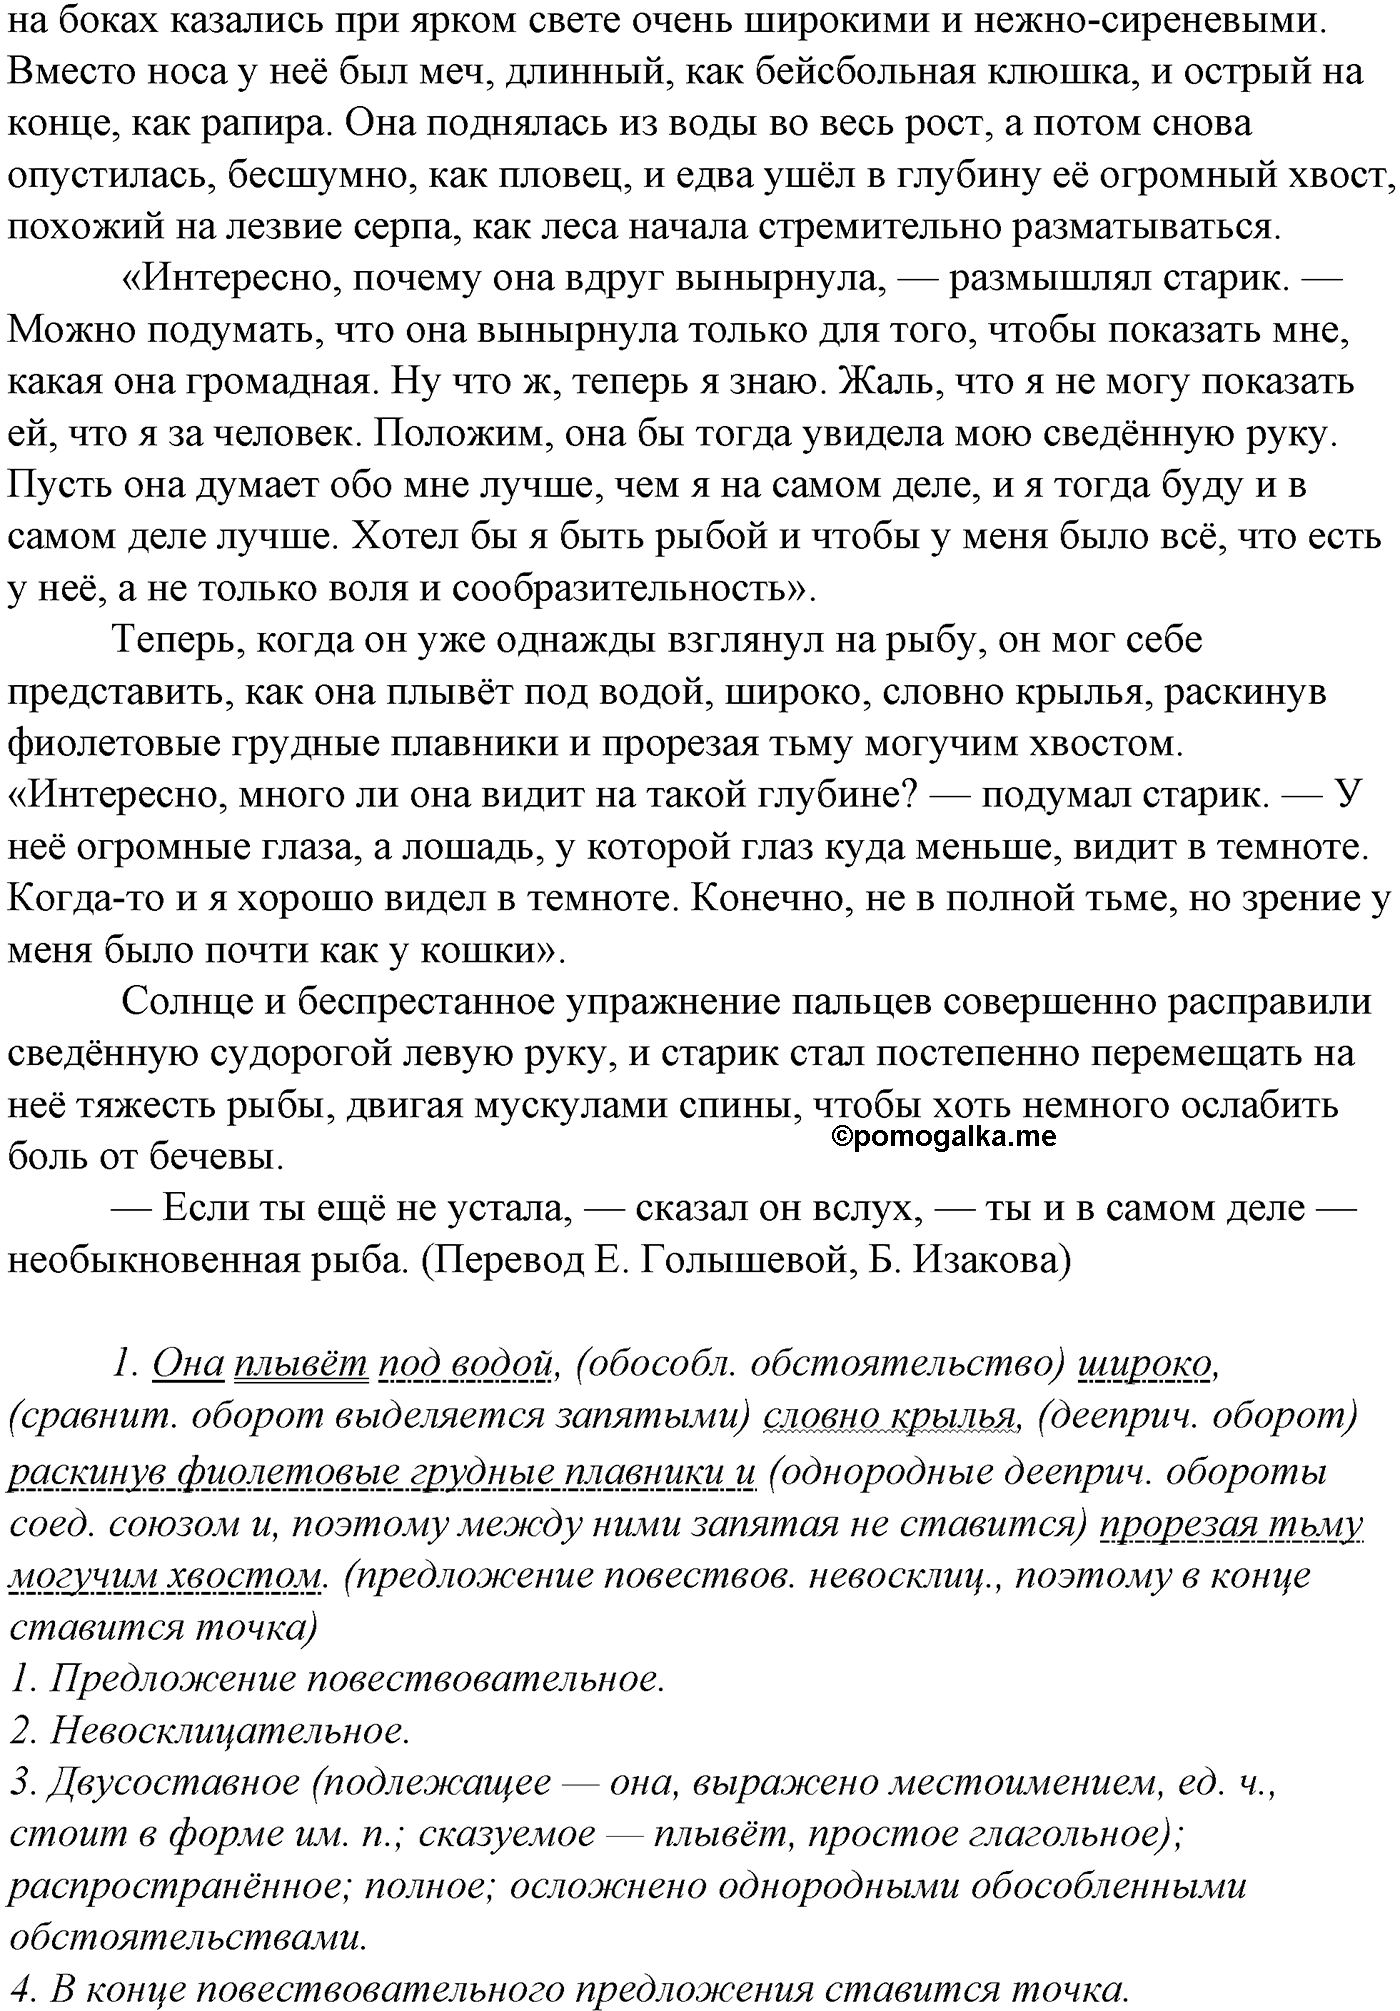 упражнение №414 русский язык 10-11 класс Гольцова